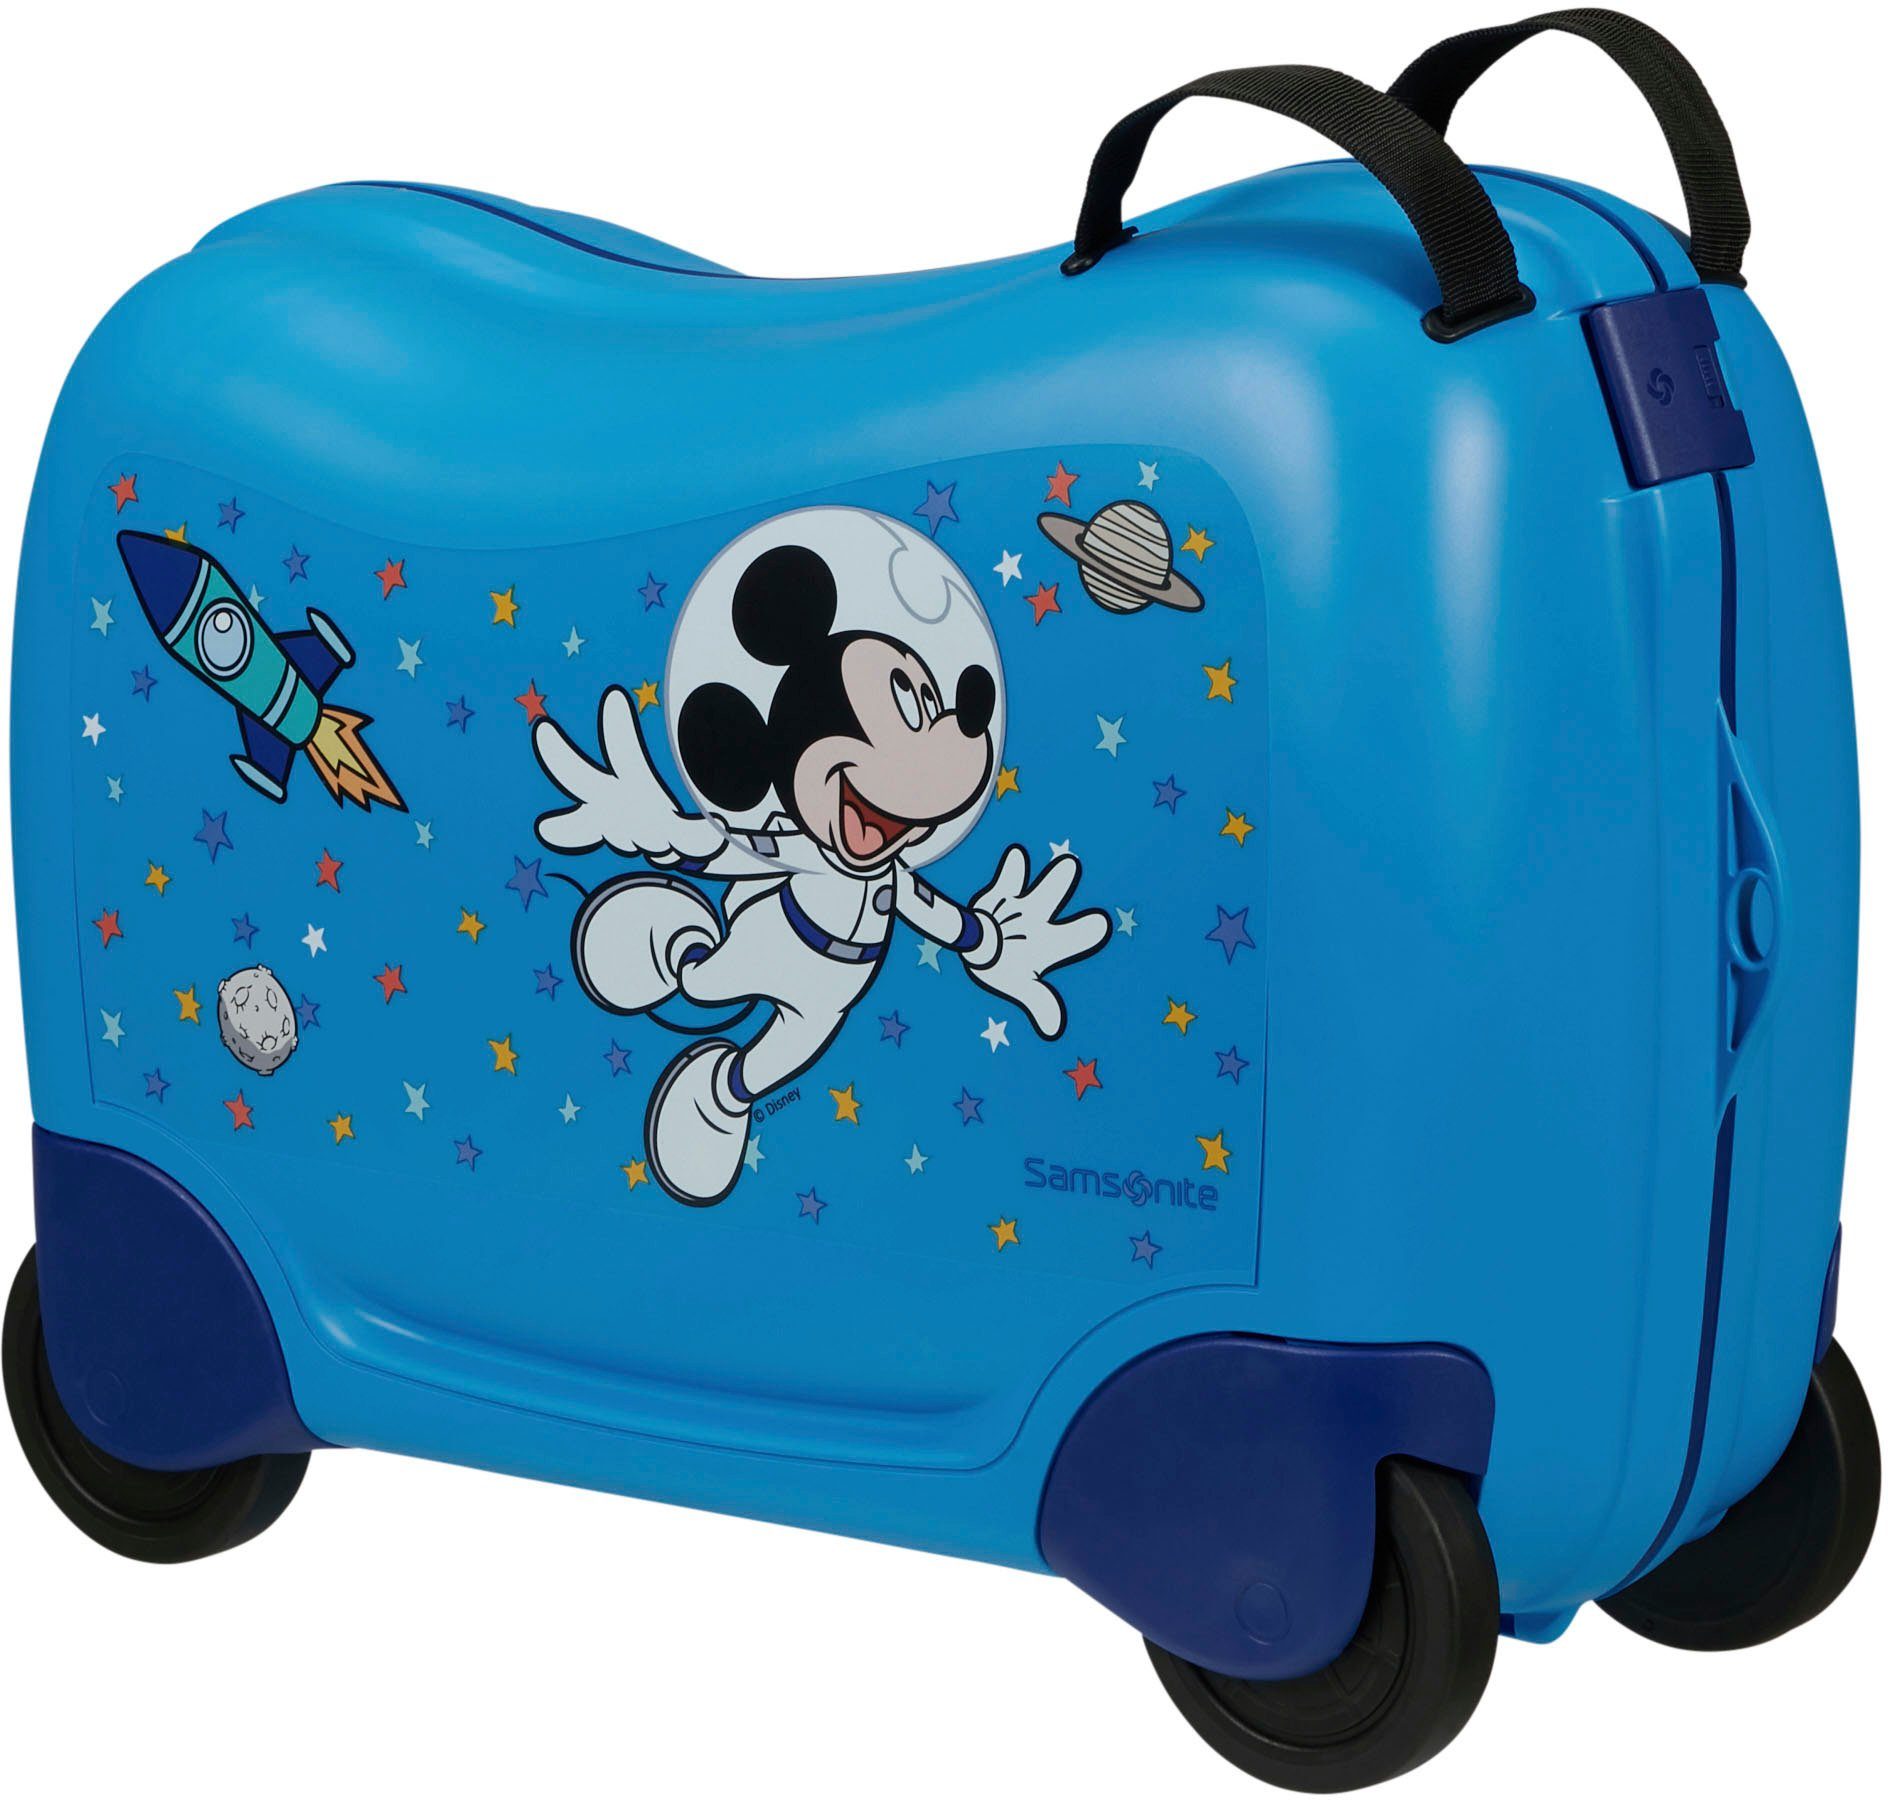 4 Kinderkoffer ziehen Samsonite Rollen, und Ride-on Stars, Mickey Trolley, Disney sitzen zum Dream2Go